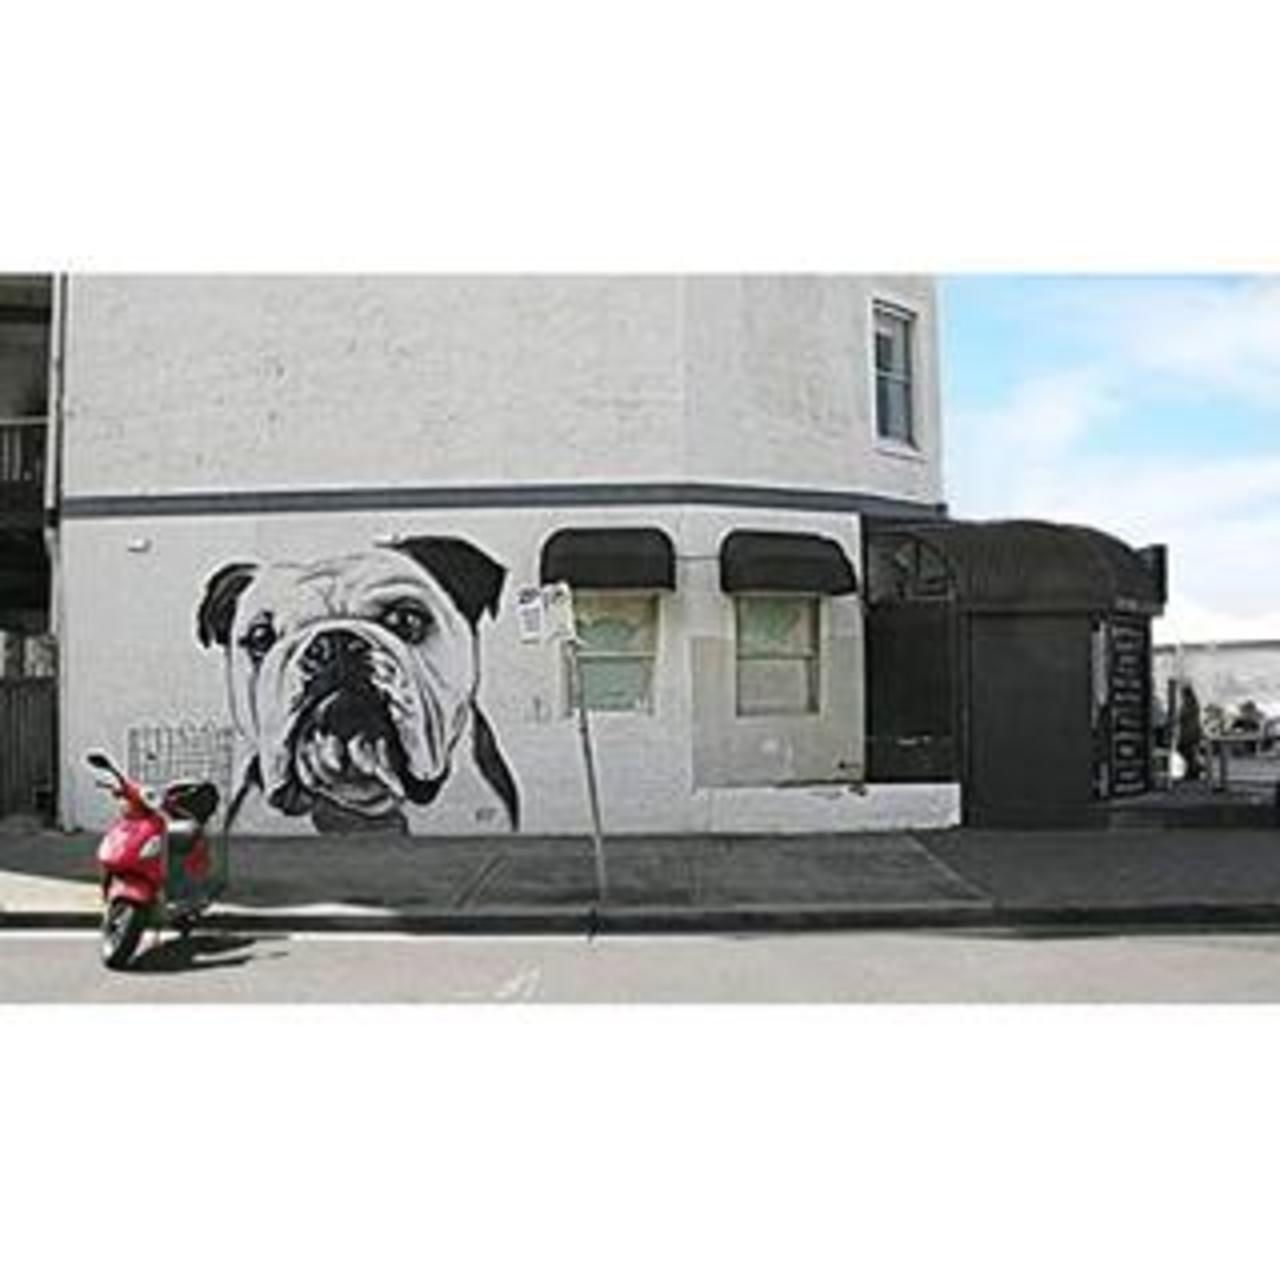 Pug graffiti #street #streetart #graffiti  #pug  #moped  #bondi  #sydney  #australlia http://www.findelight.net/puggie_detail.html?id=1083623757057467284_503696383 http://t.co/aglfKcBFK8